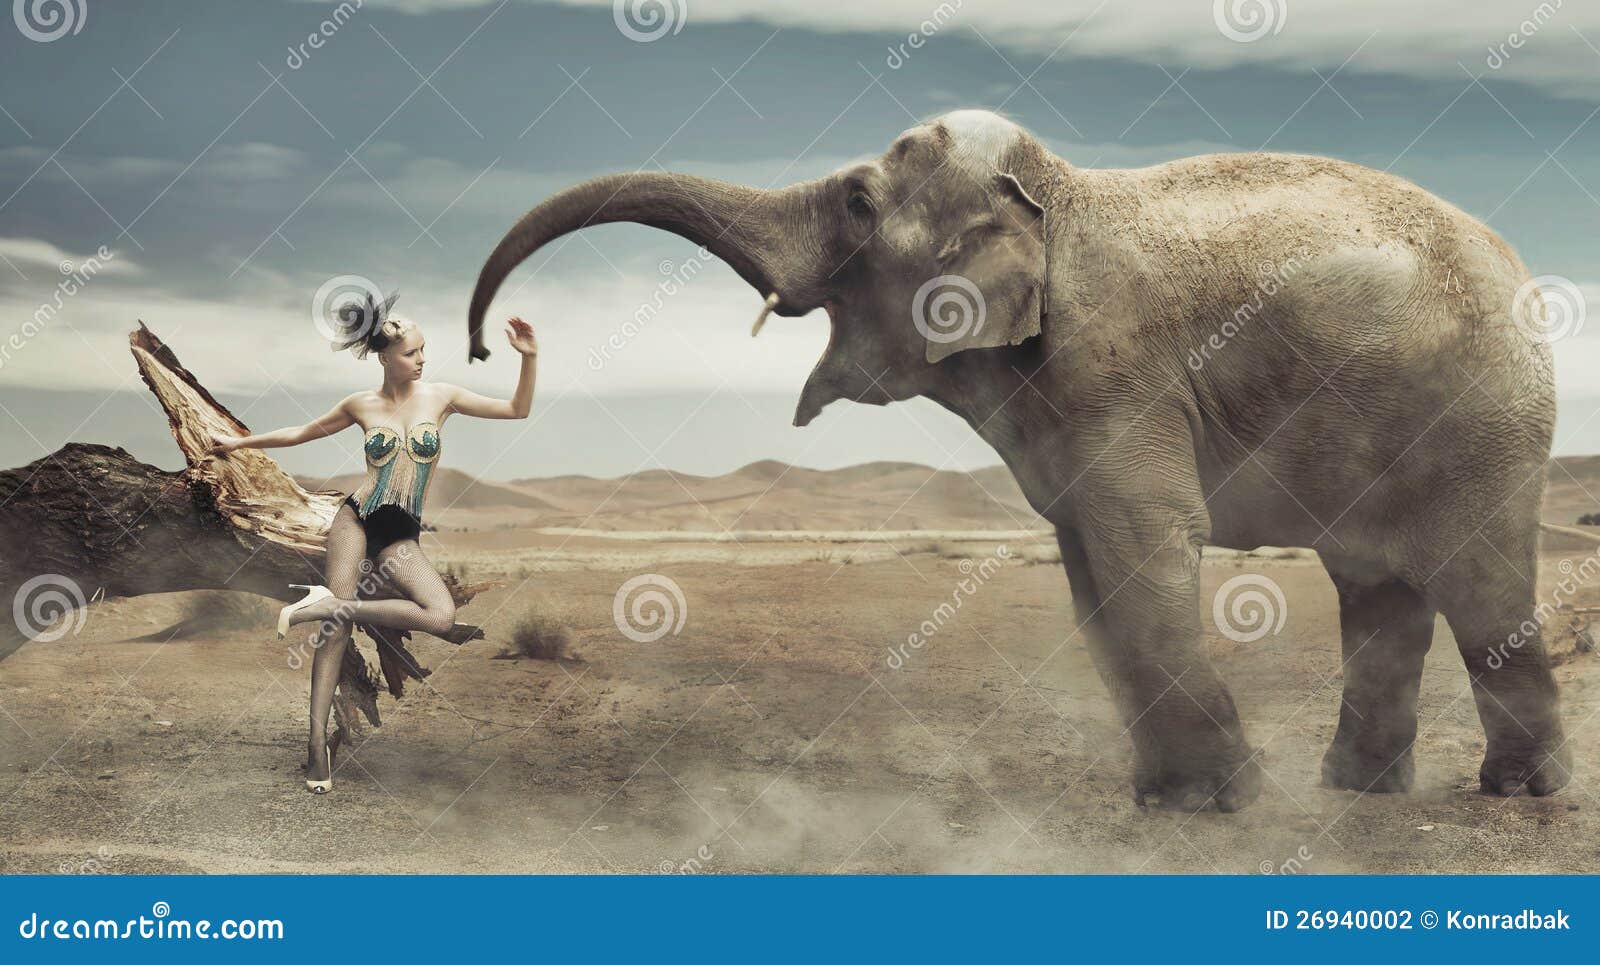 fashionable lady with elephant